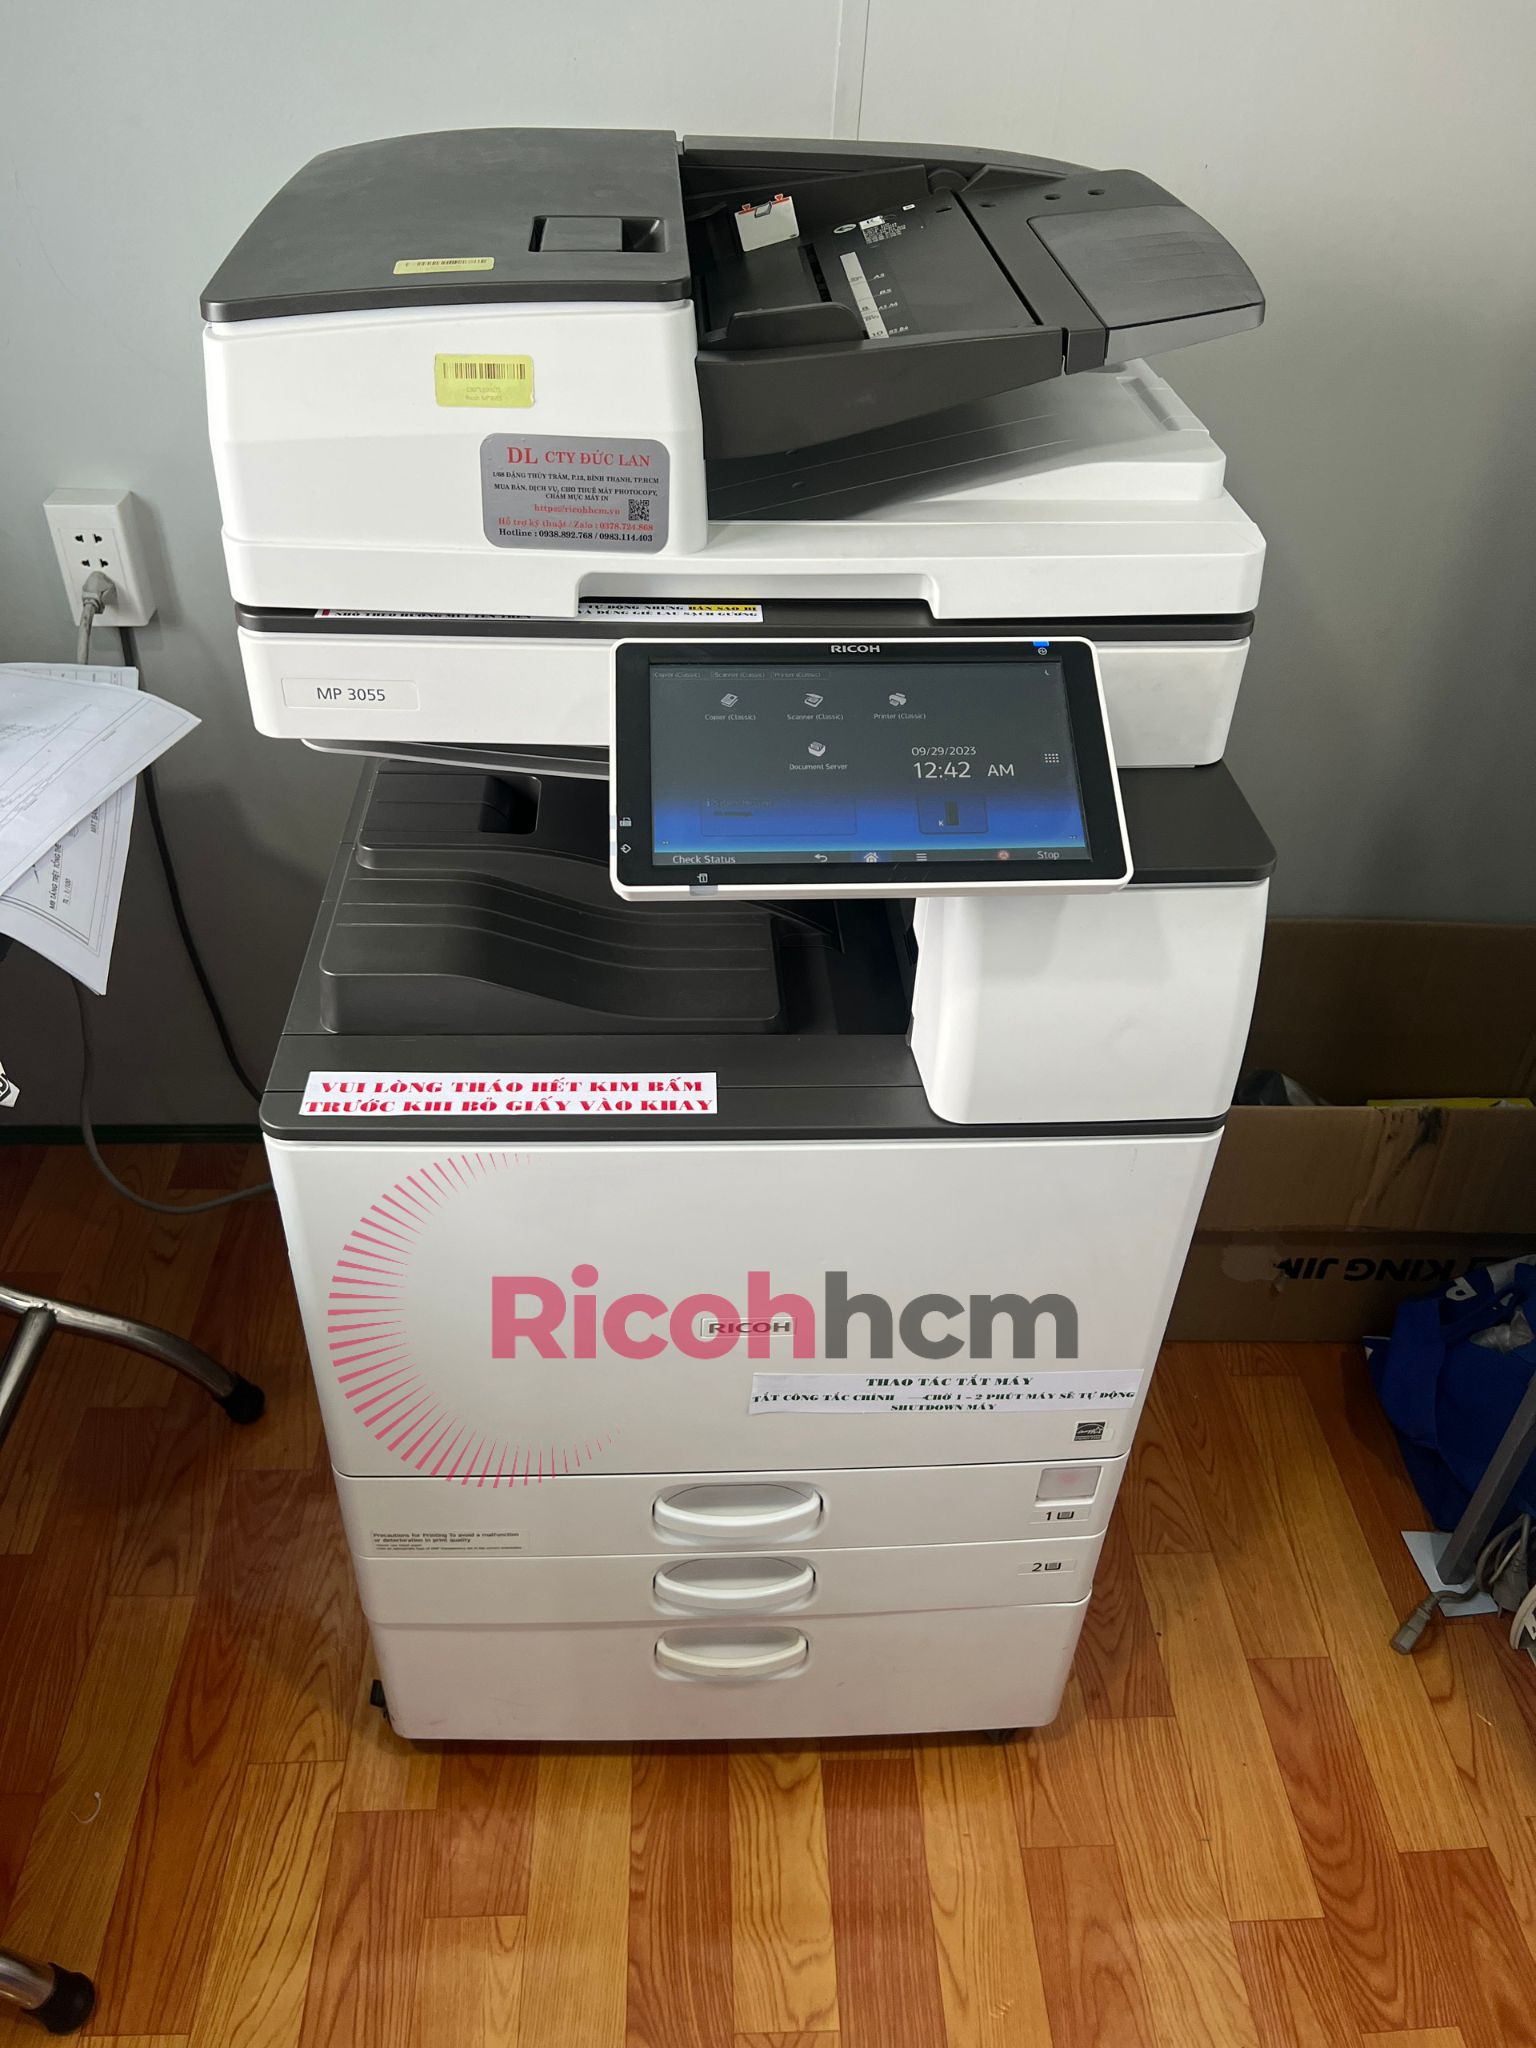 Hiện nay, thay vì mua một chiếc máy photocopy mới với mức giá đắt đỏ, nhiều doanh nghiệp đã chọn giải pháp mua lại những dòng máy cũ nhập khẩu chính hãng. Đây là là lý do khiến thị trường mua bán máy photocopy quận 2 trở nên rất sôi động.